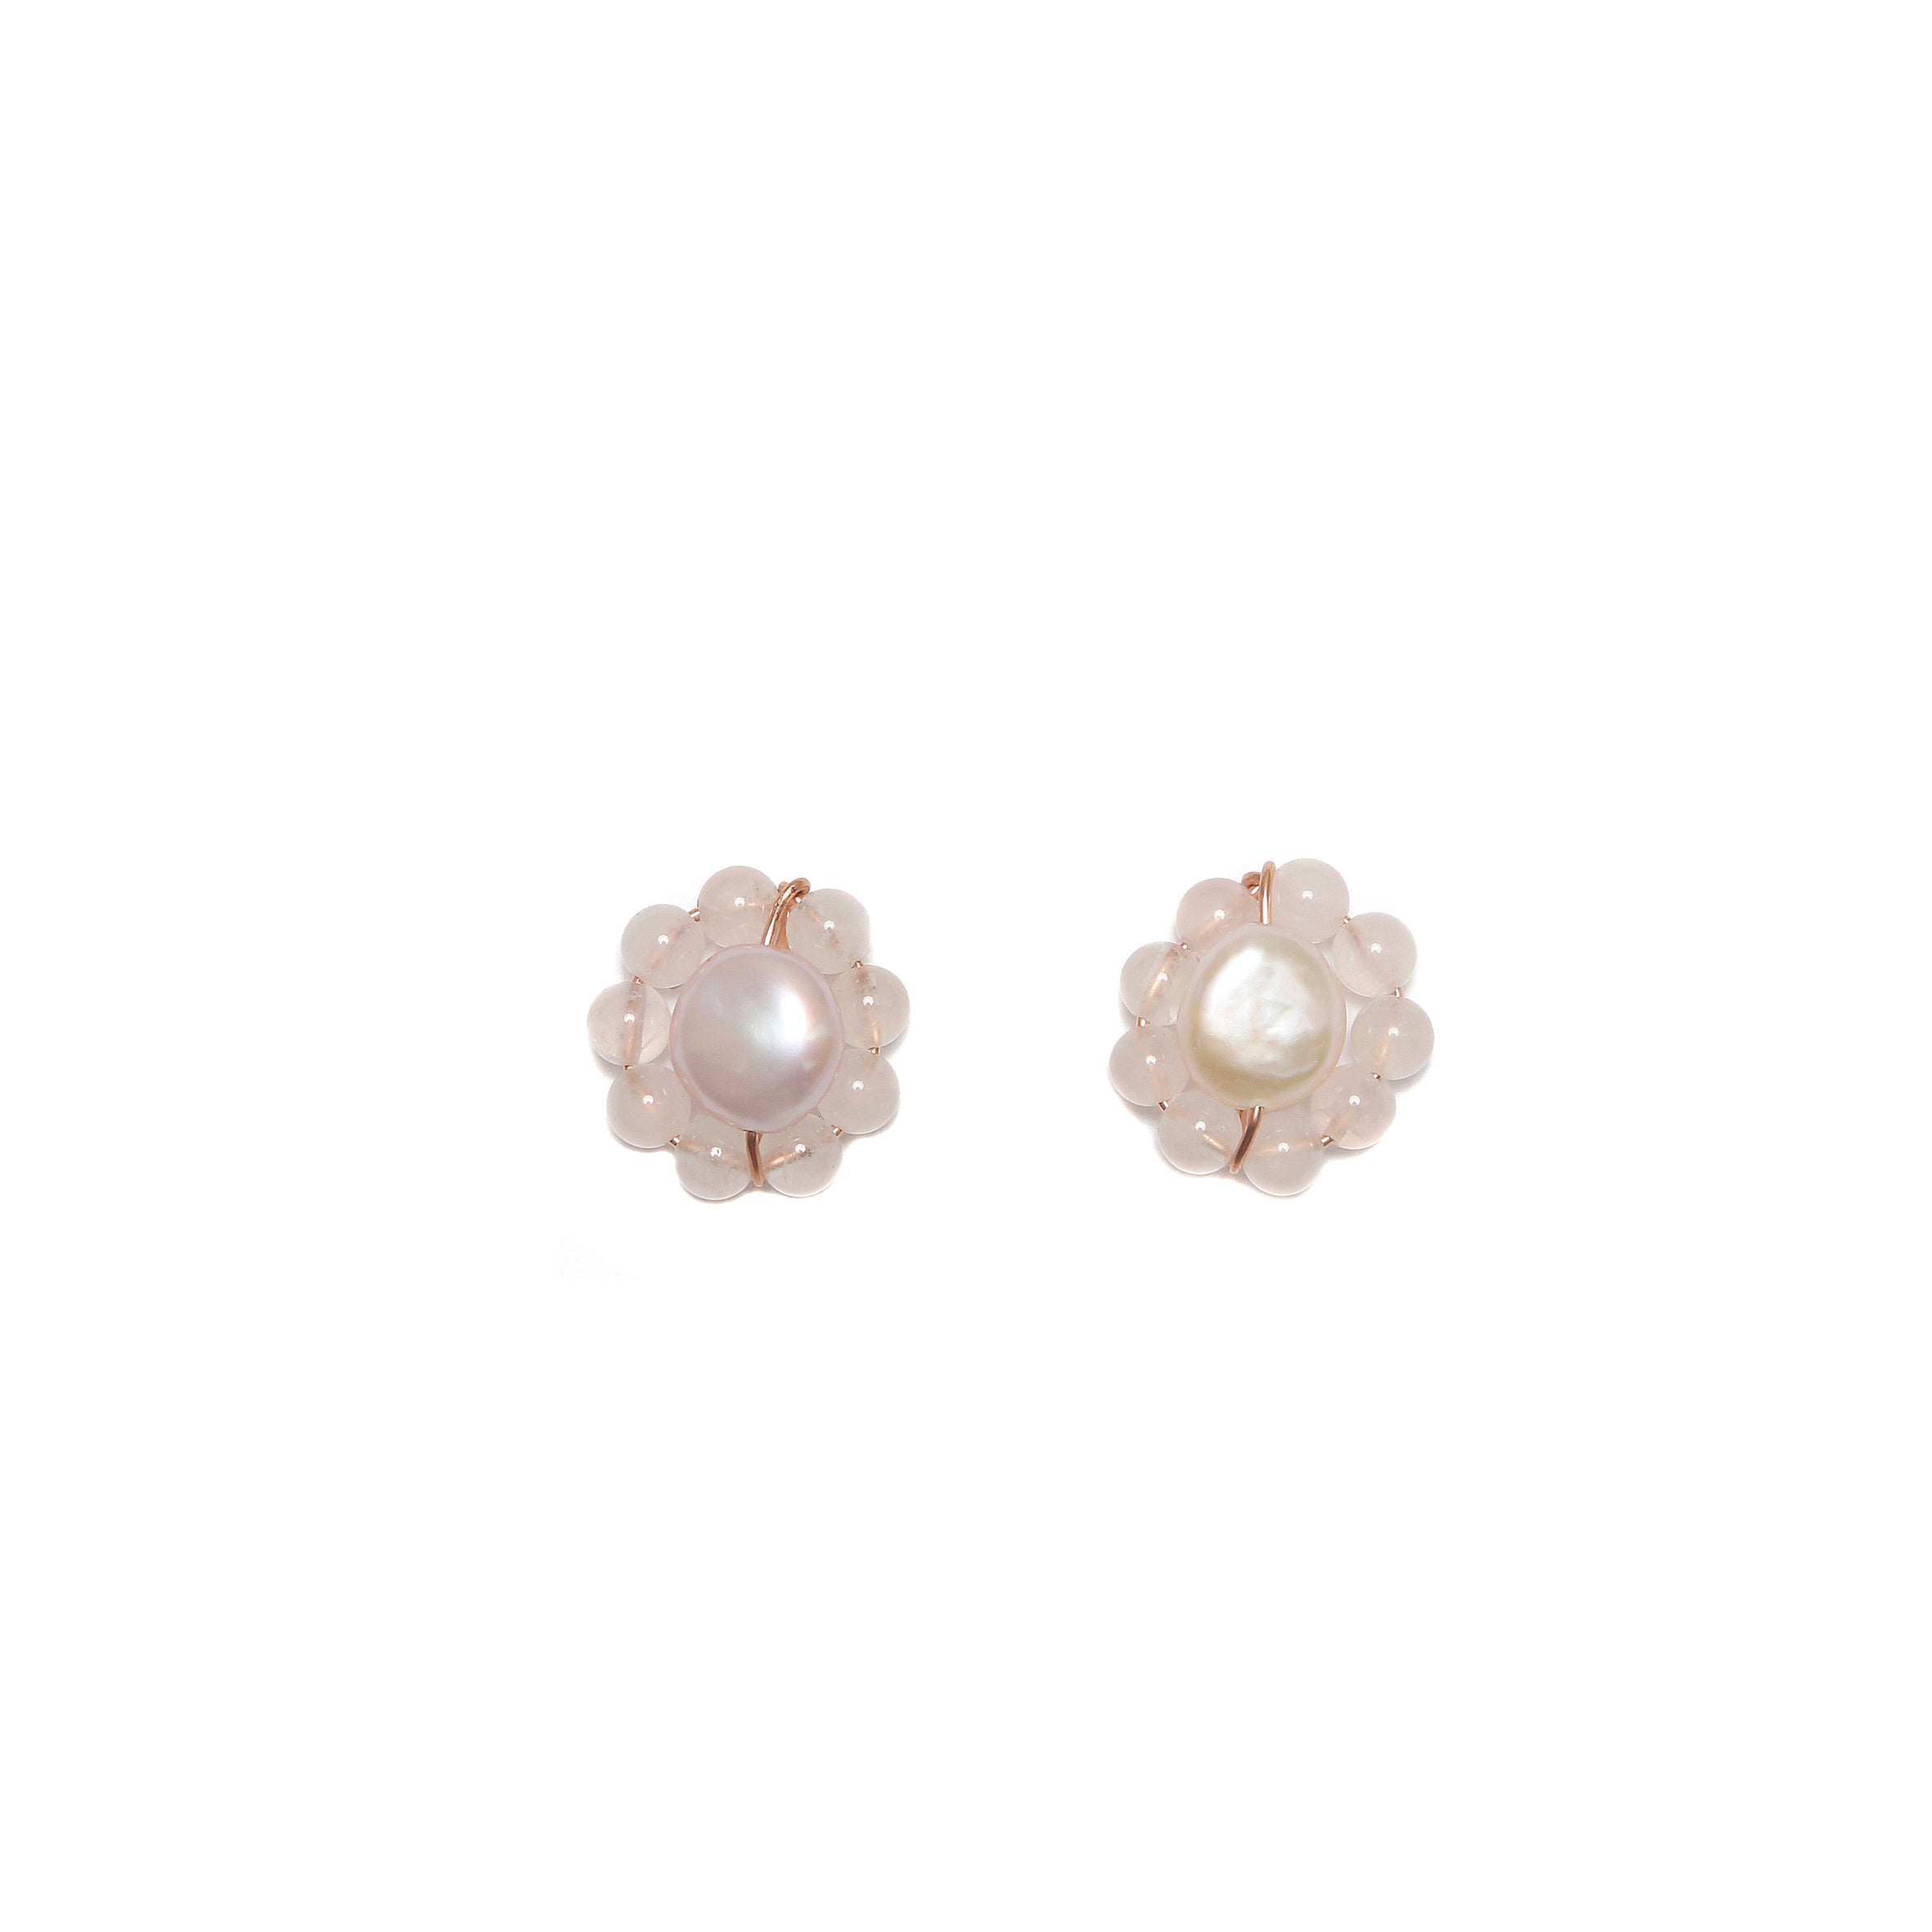 Rosetta Earring - Pearl & Rose Quartz Earrings TARBAY   